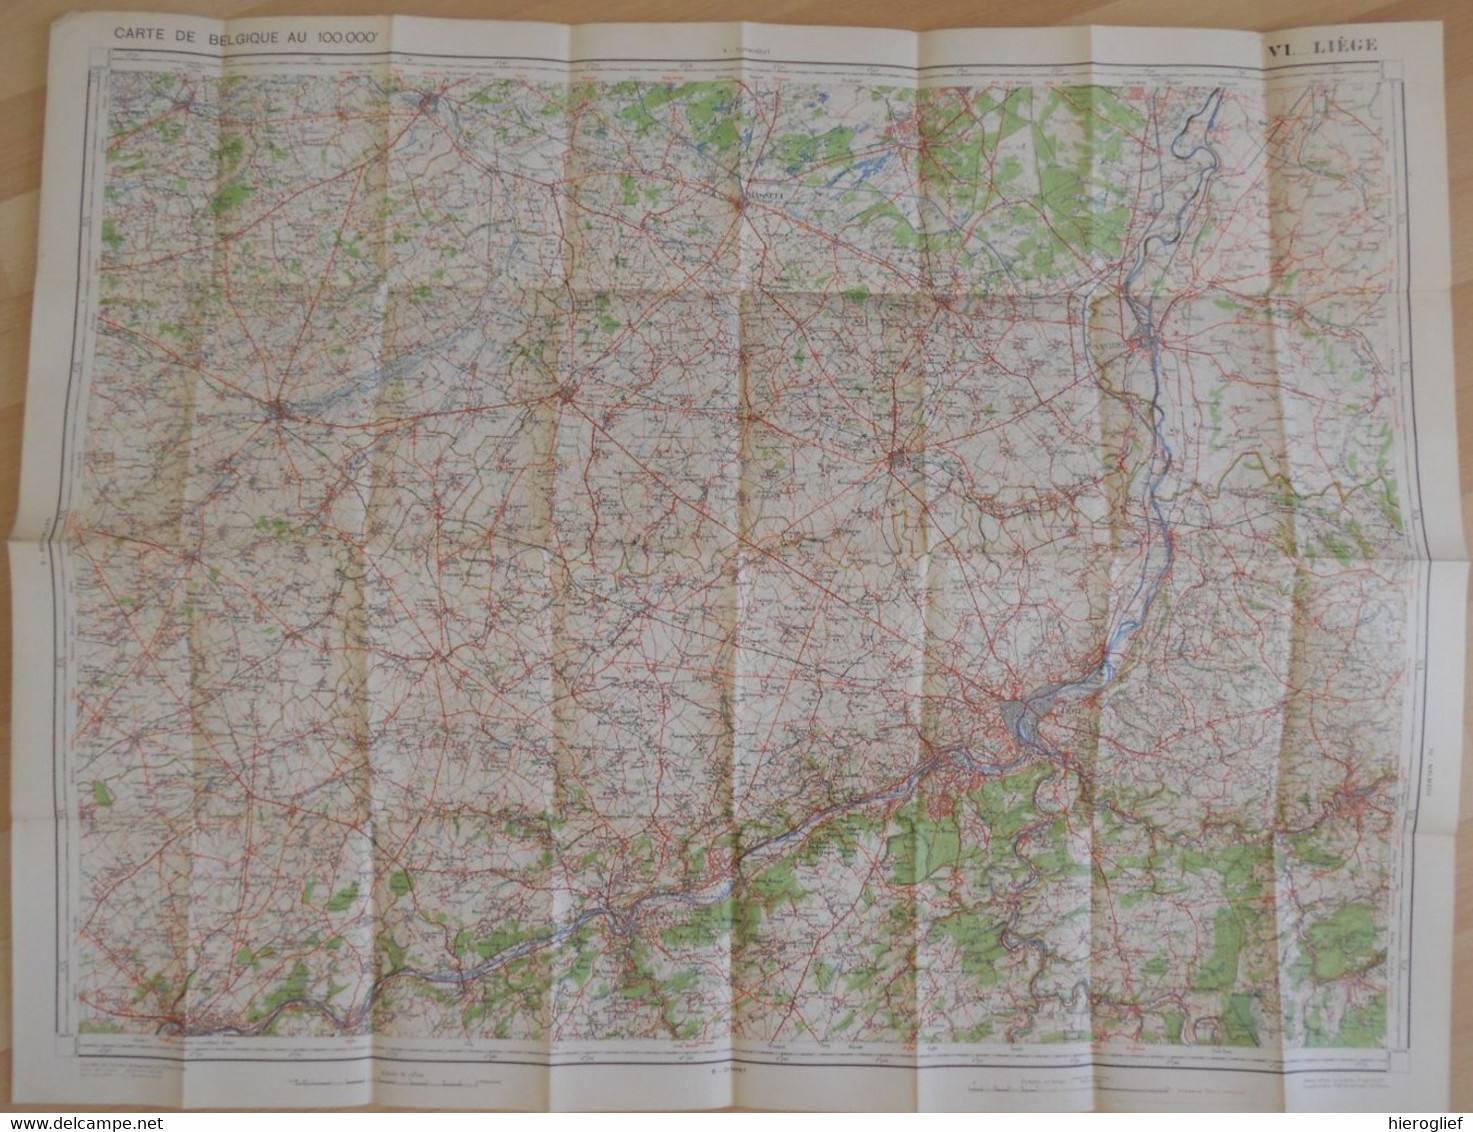 Carte De BELGIQUE Nr 6 LIEGE Institut Cartographique Militaire Impression Litho 1933 Maastricht Hasselt Tongeren Tienen - Cartes Topographiques